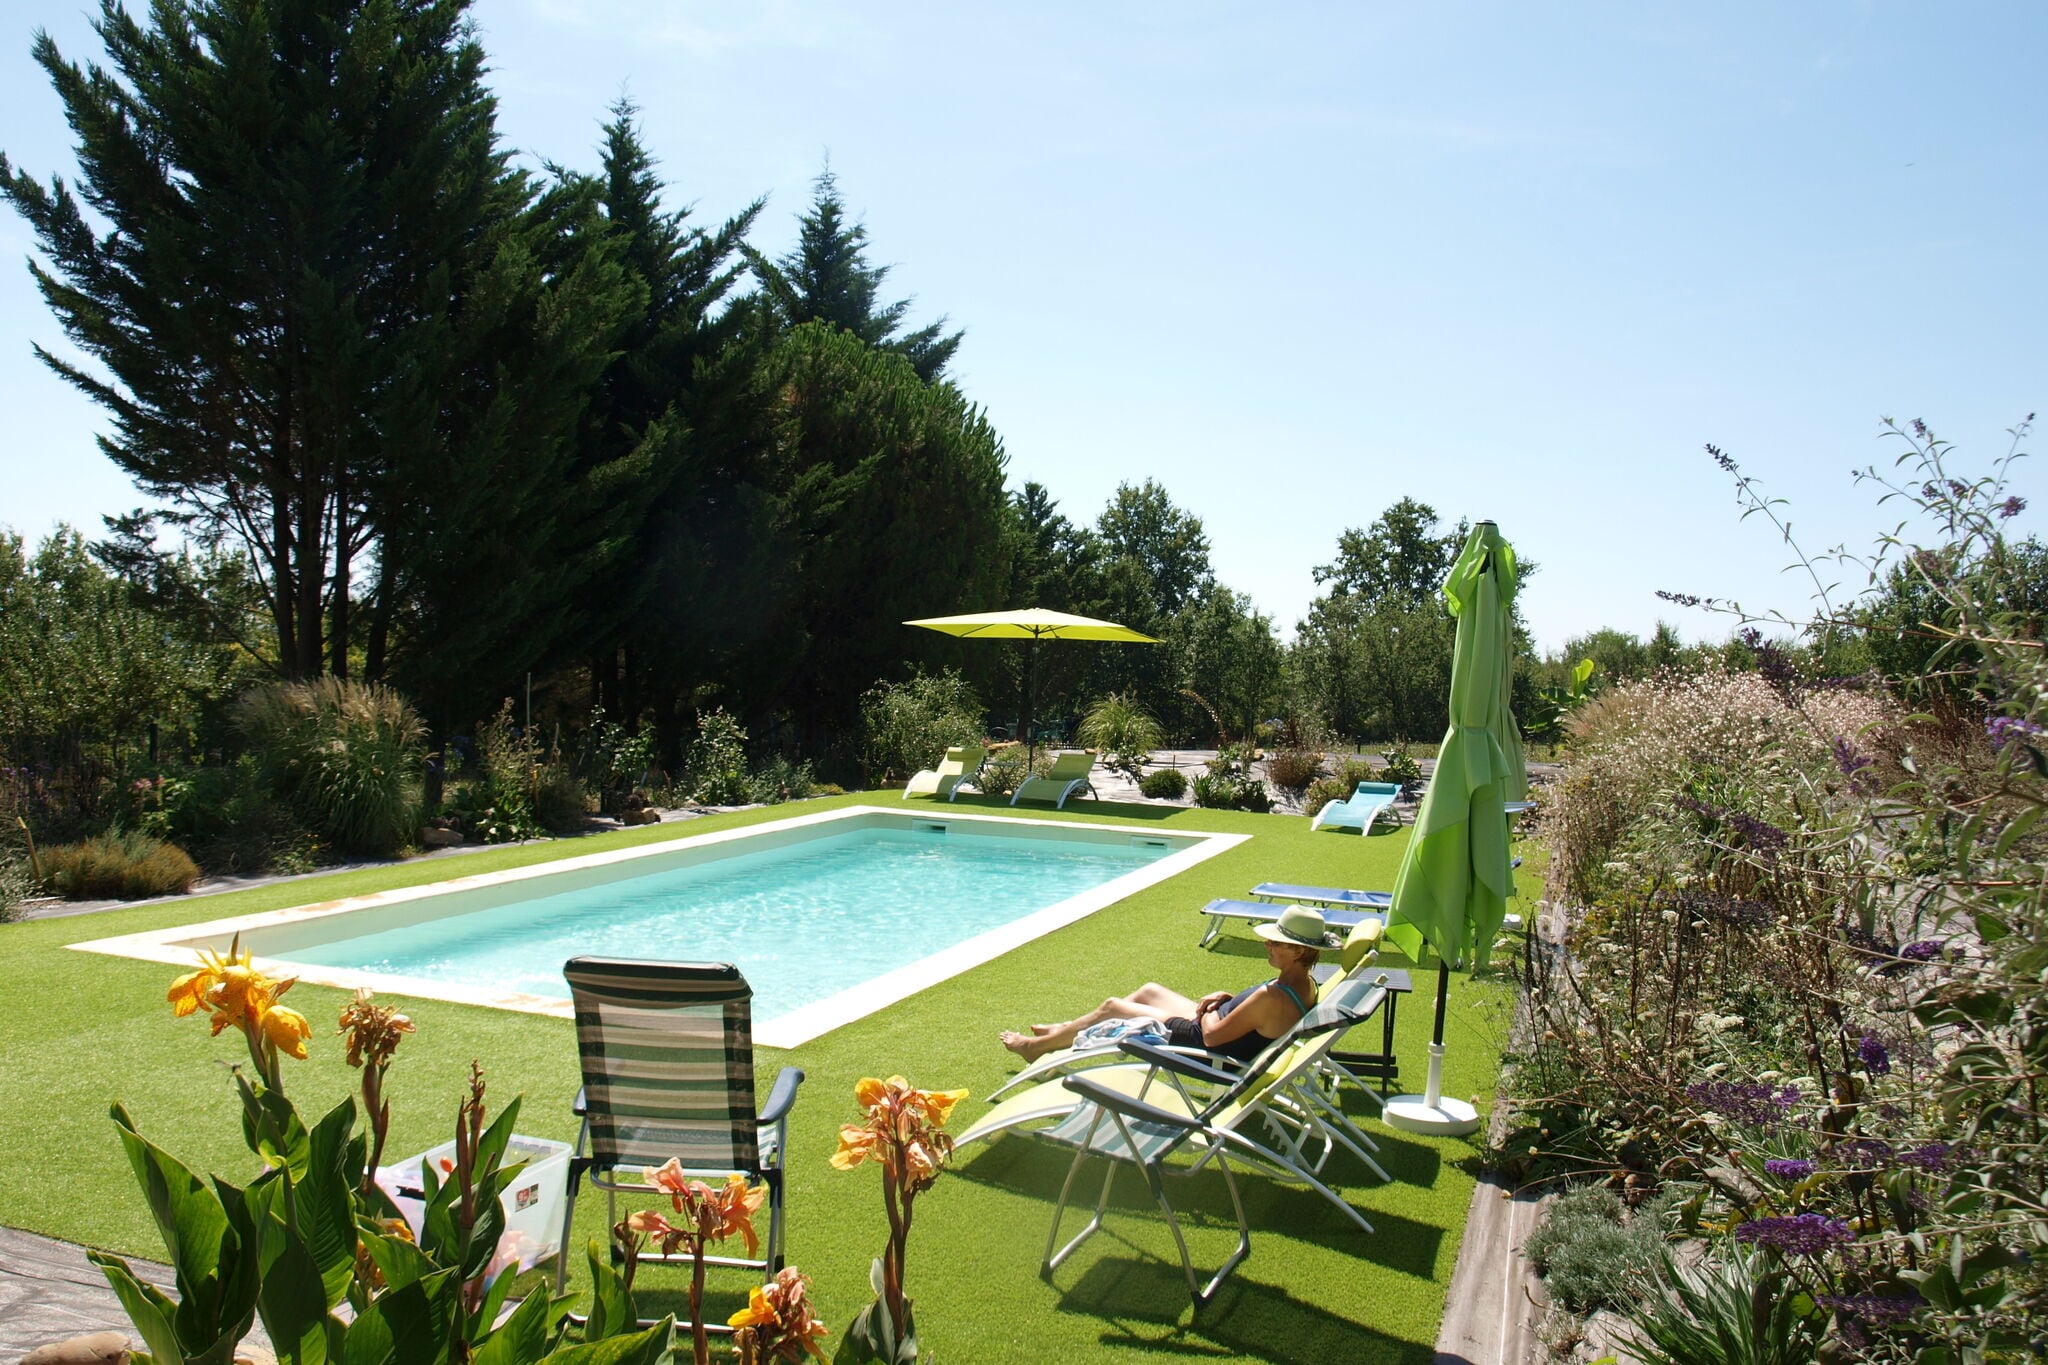 Französisches Ferienhaus in Aquitanien mit privatem Pool